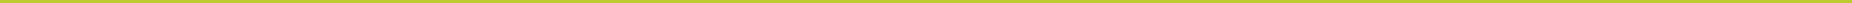 divisor-verde-limão